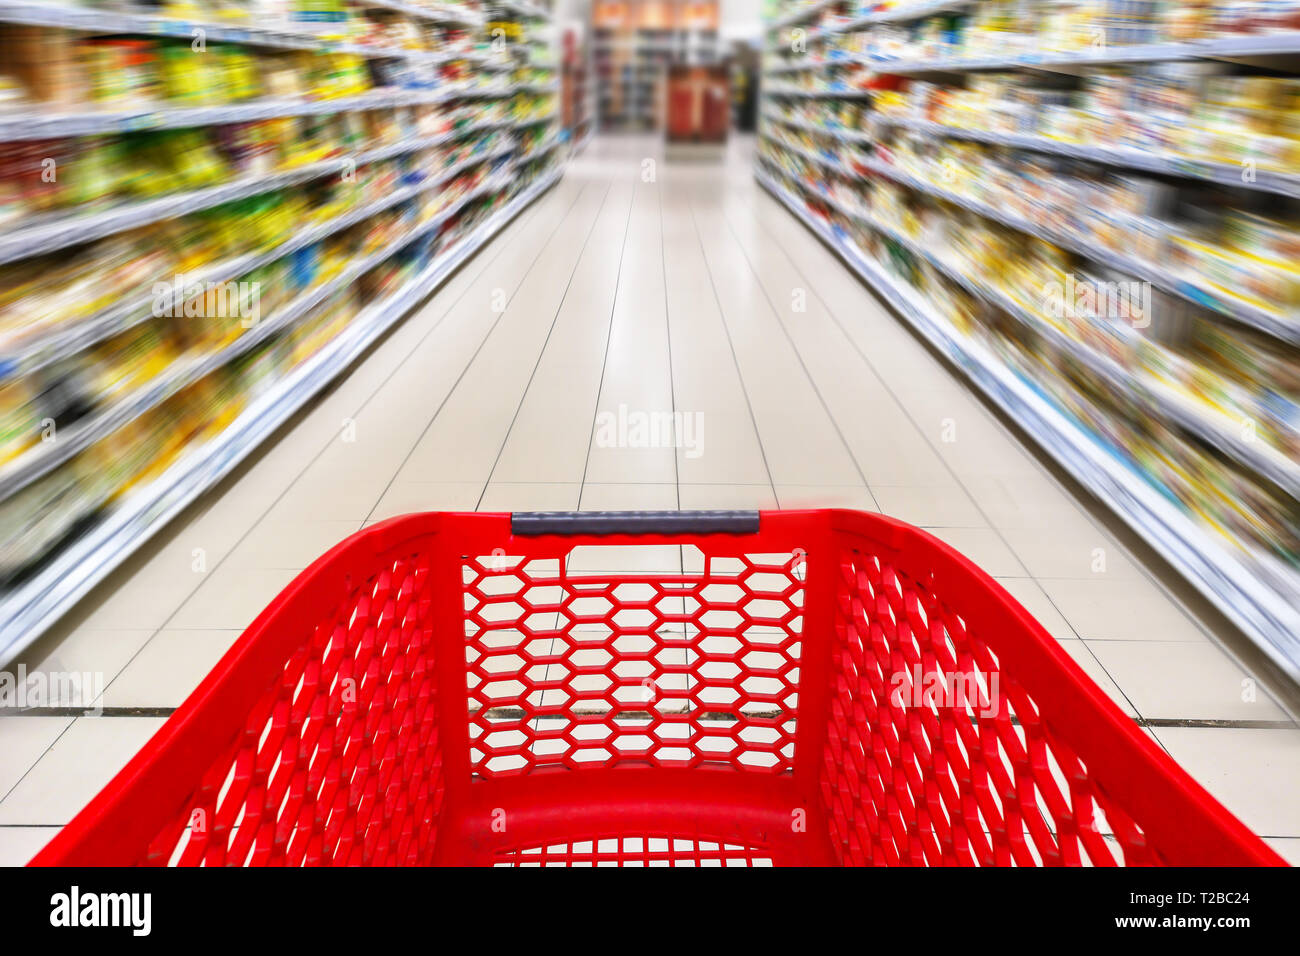 Panier vide rouge dans une allée de supermarché, le motion blur Banque D'Images